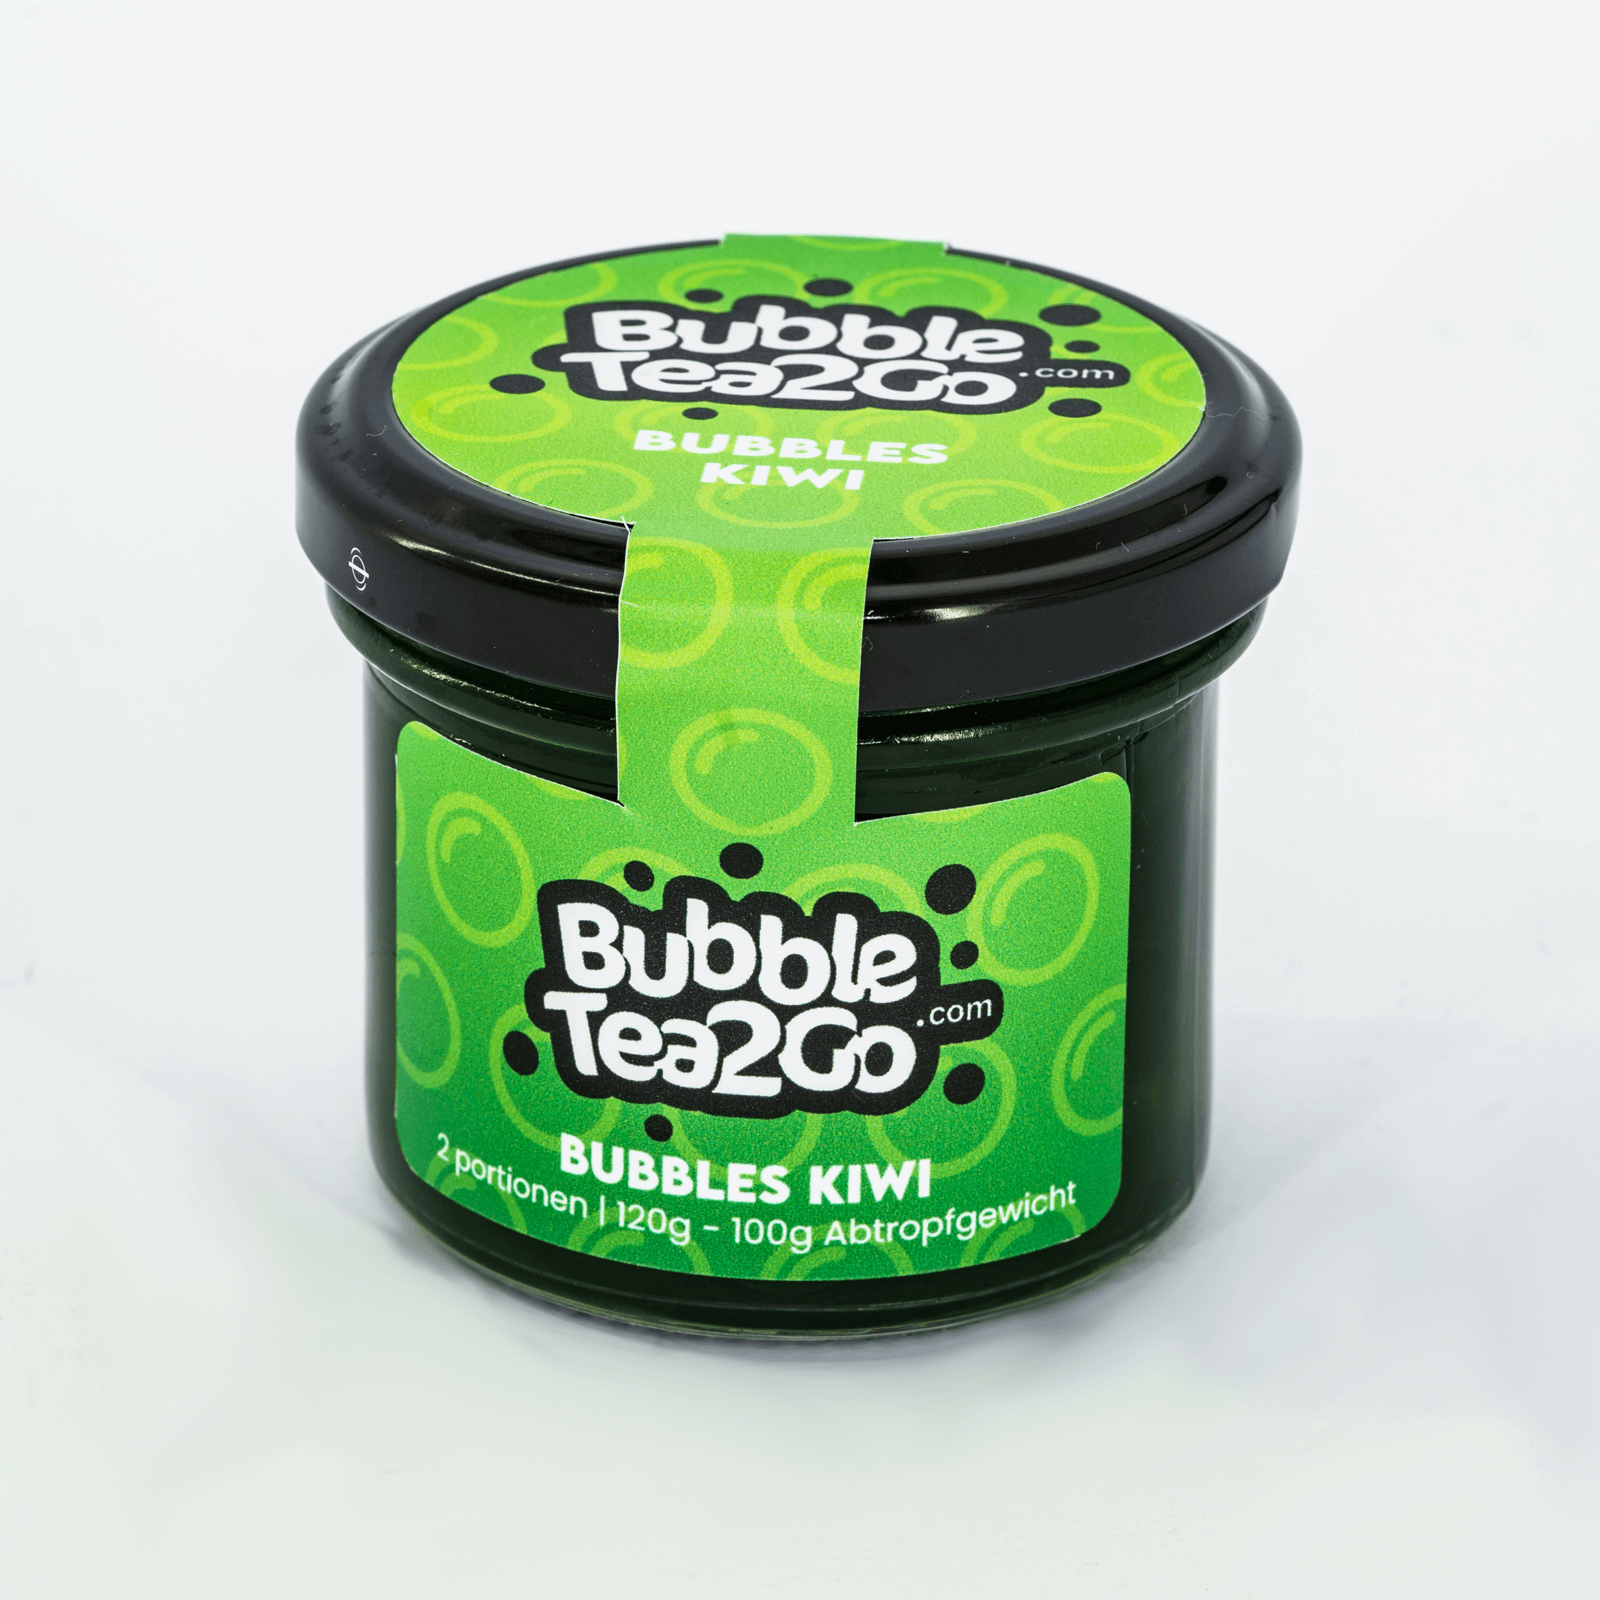 Bubbles - Kiwi 2 porciones (120g)